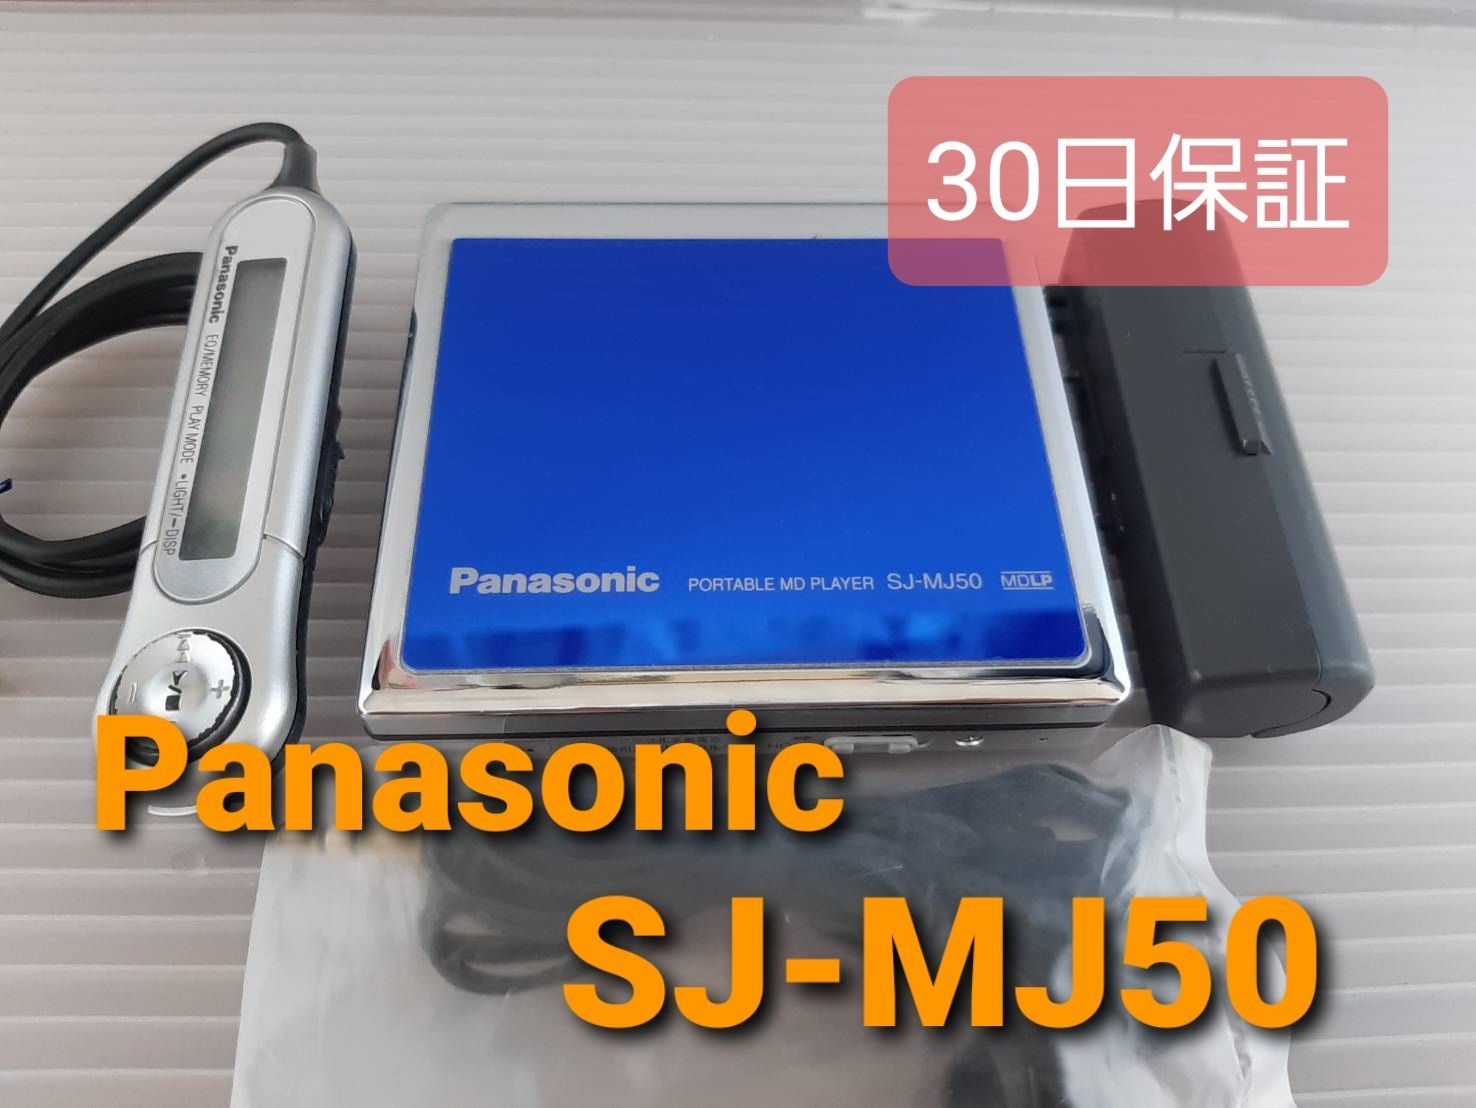 パナソニック ポータブルMDプレーヤー SJ-MJ50 ブルー - メルカリ